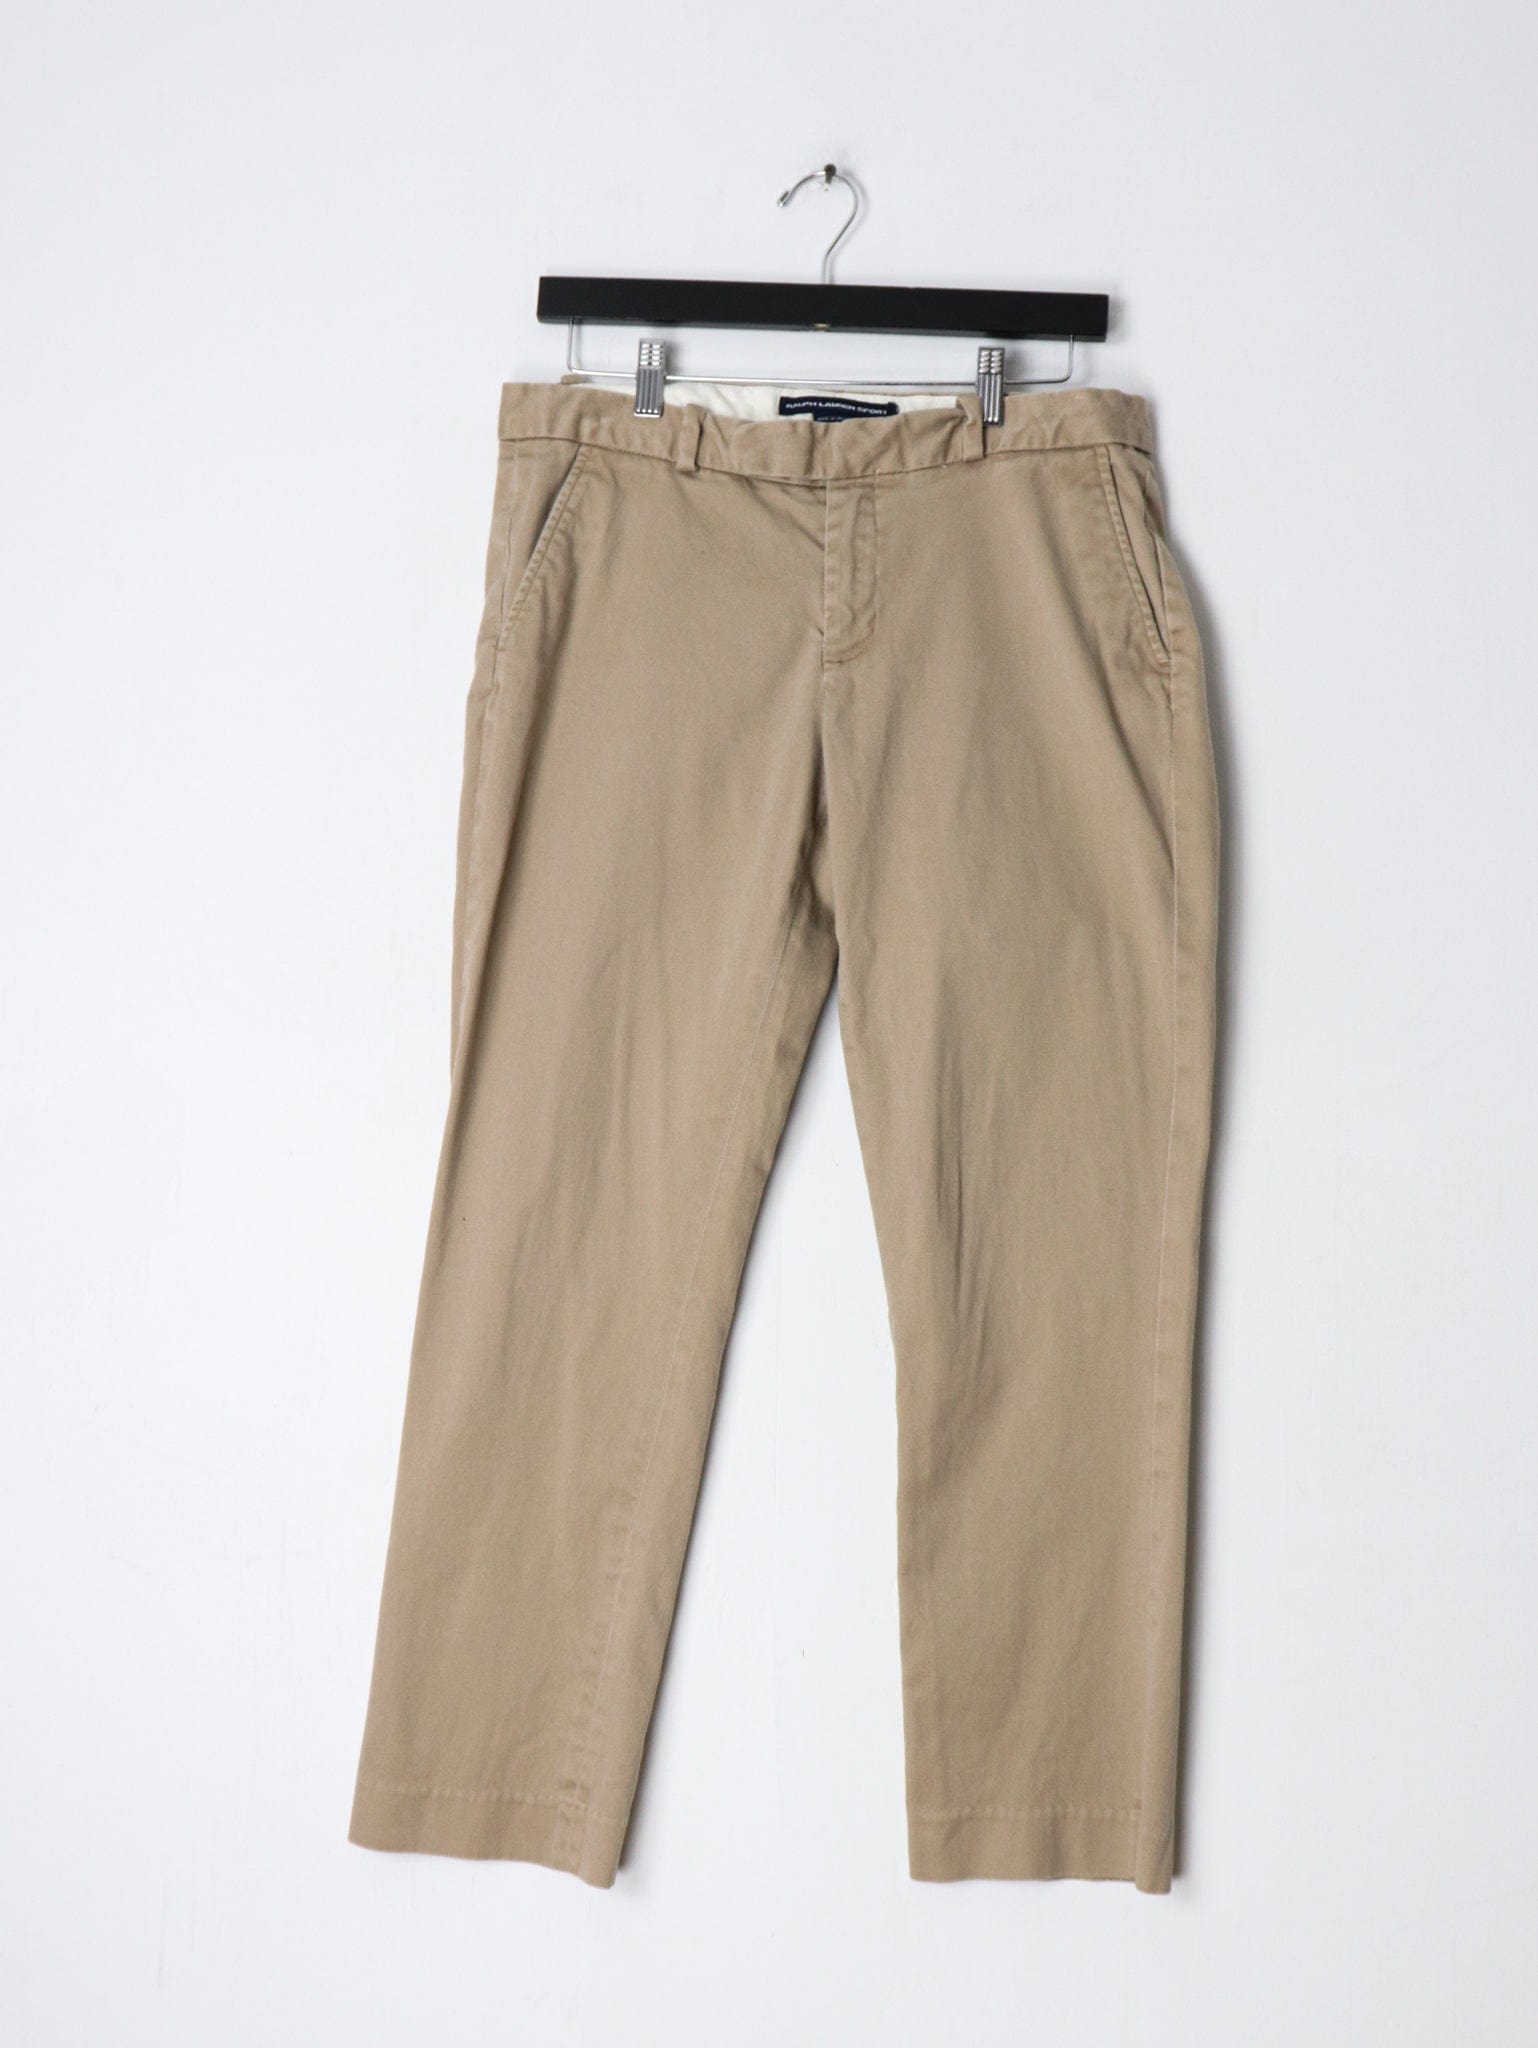 LAUREN RALPH LAUREN: Pants woman - Beige | LAUREN RALPH LAUREN pants  200811955 online at GIGLIO.COM